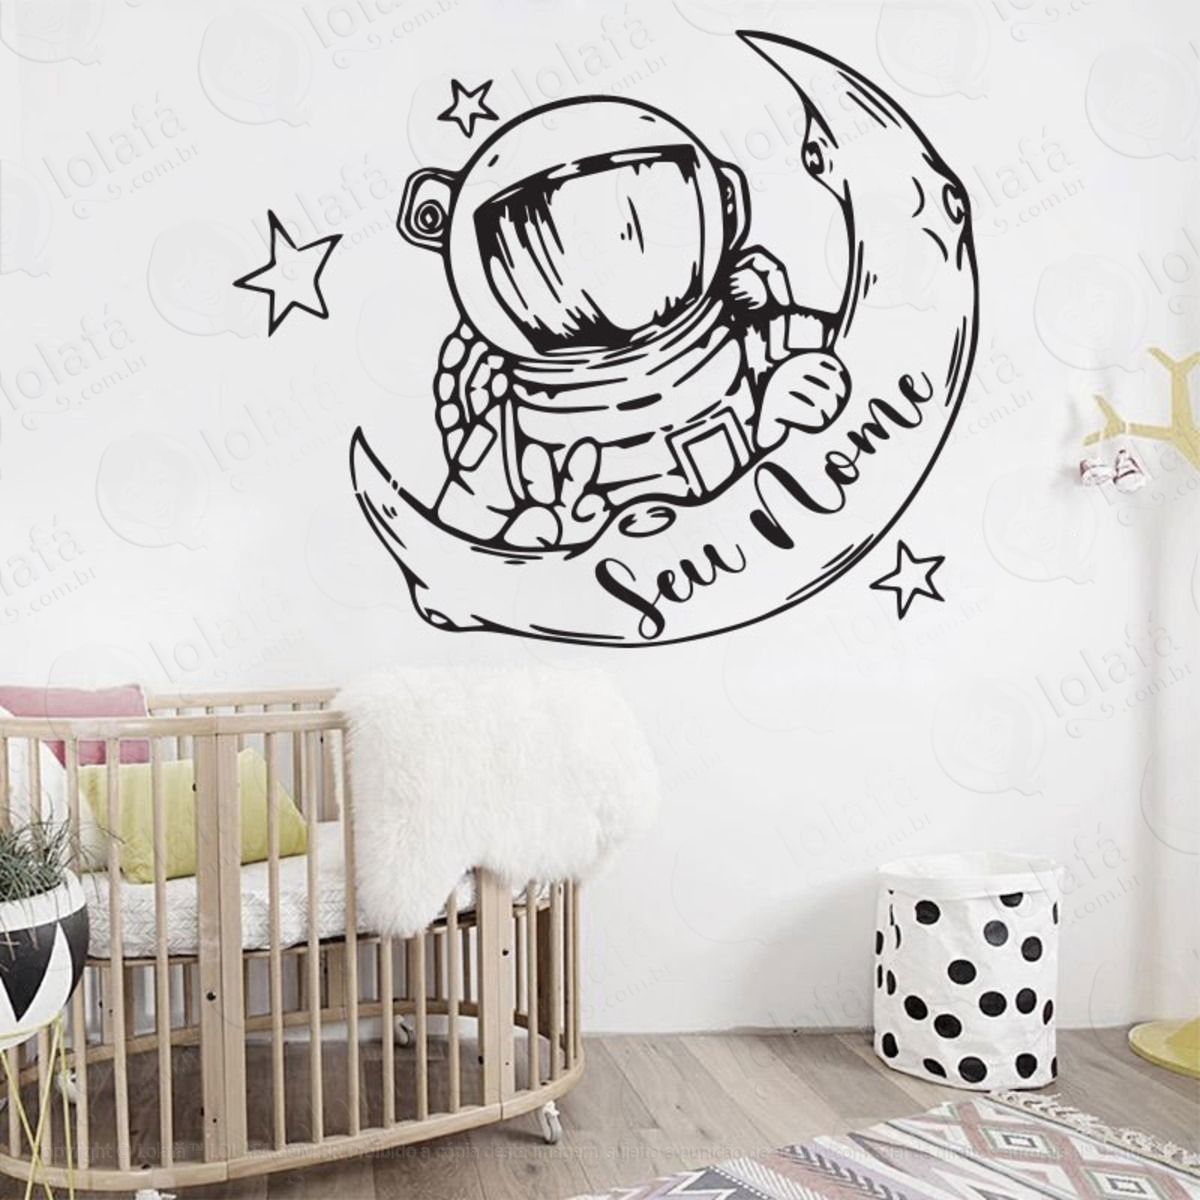 adesivo astronauta com nome personalizado decoração parede mod:272